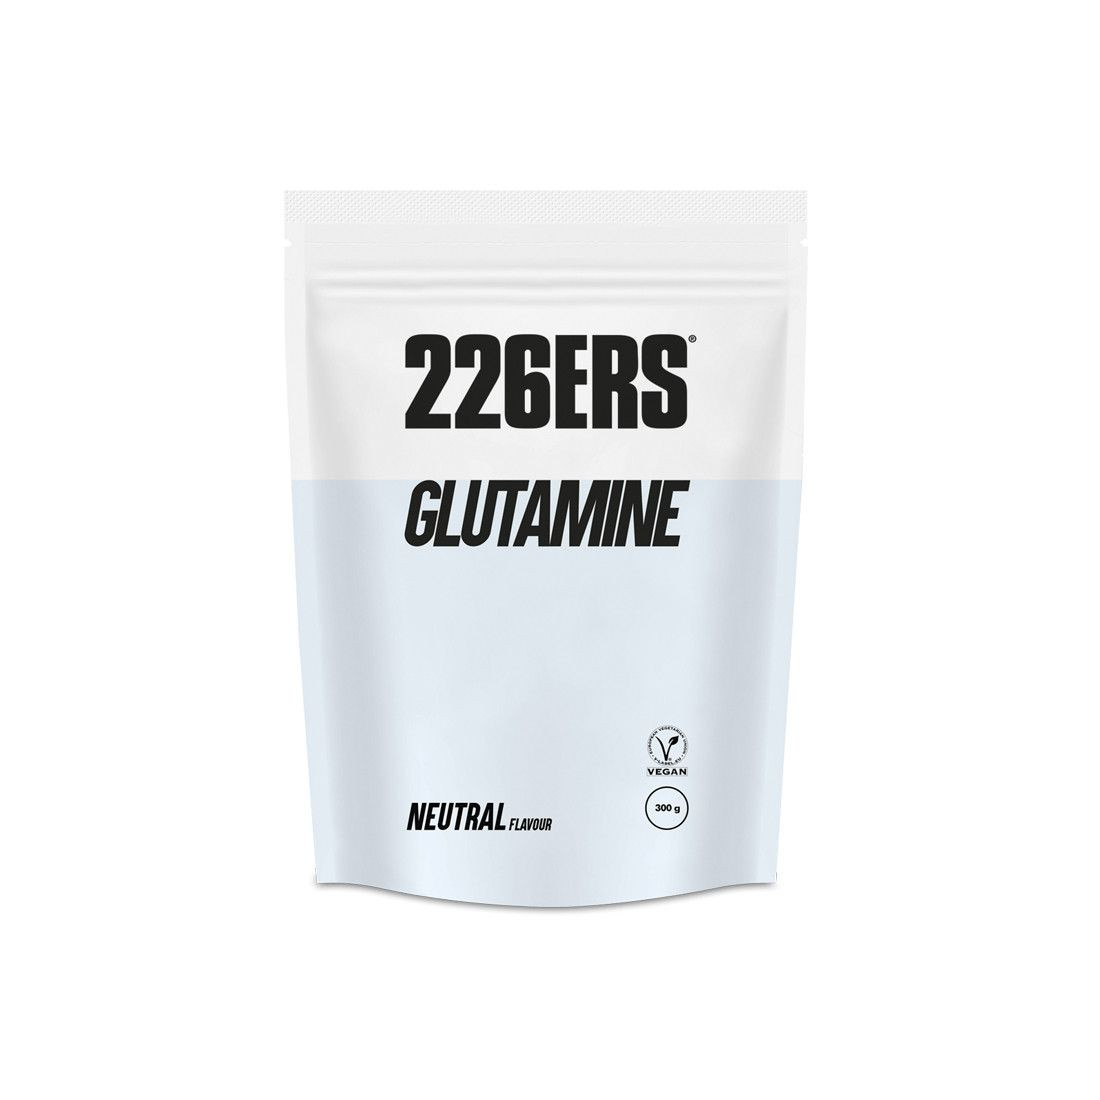 GLUTAMINE - Powdered - 300g